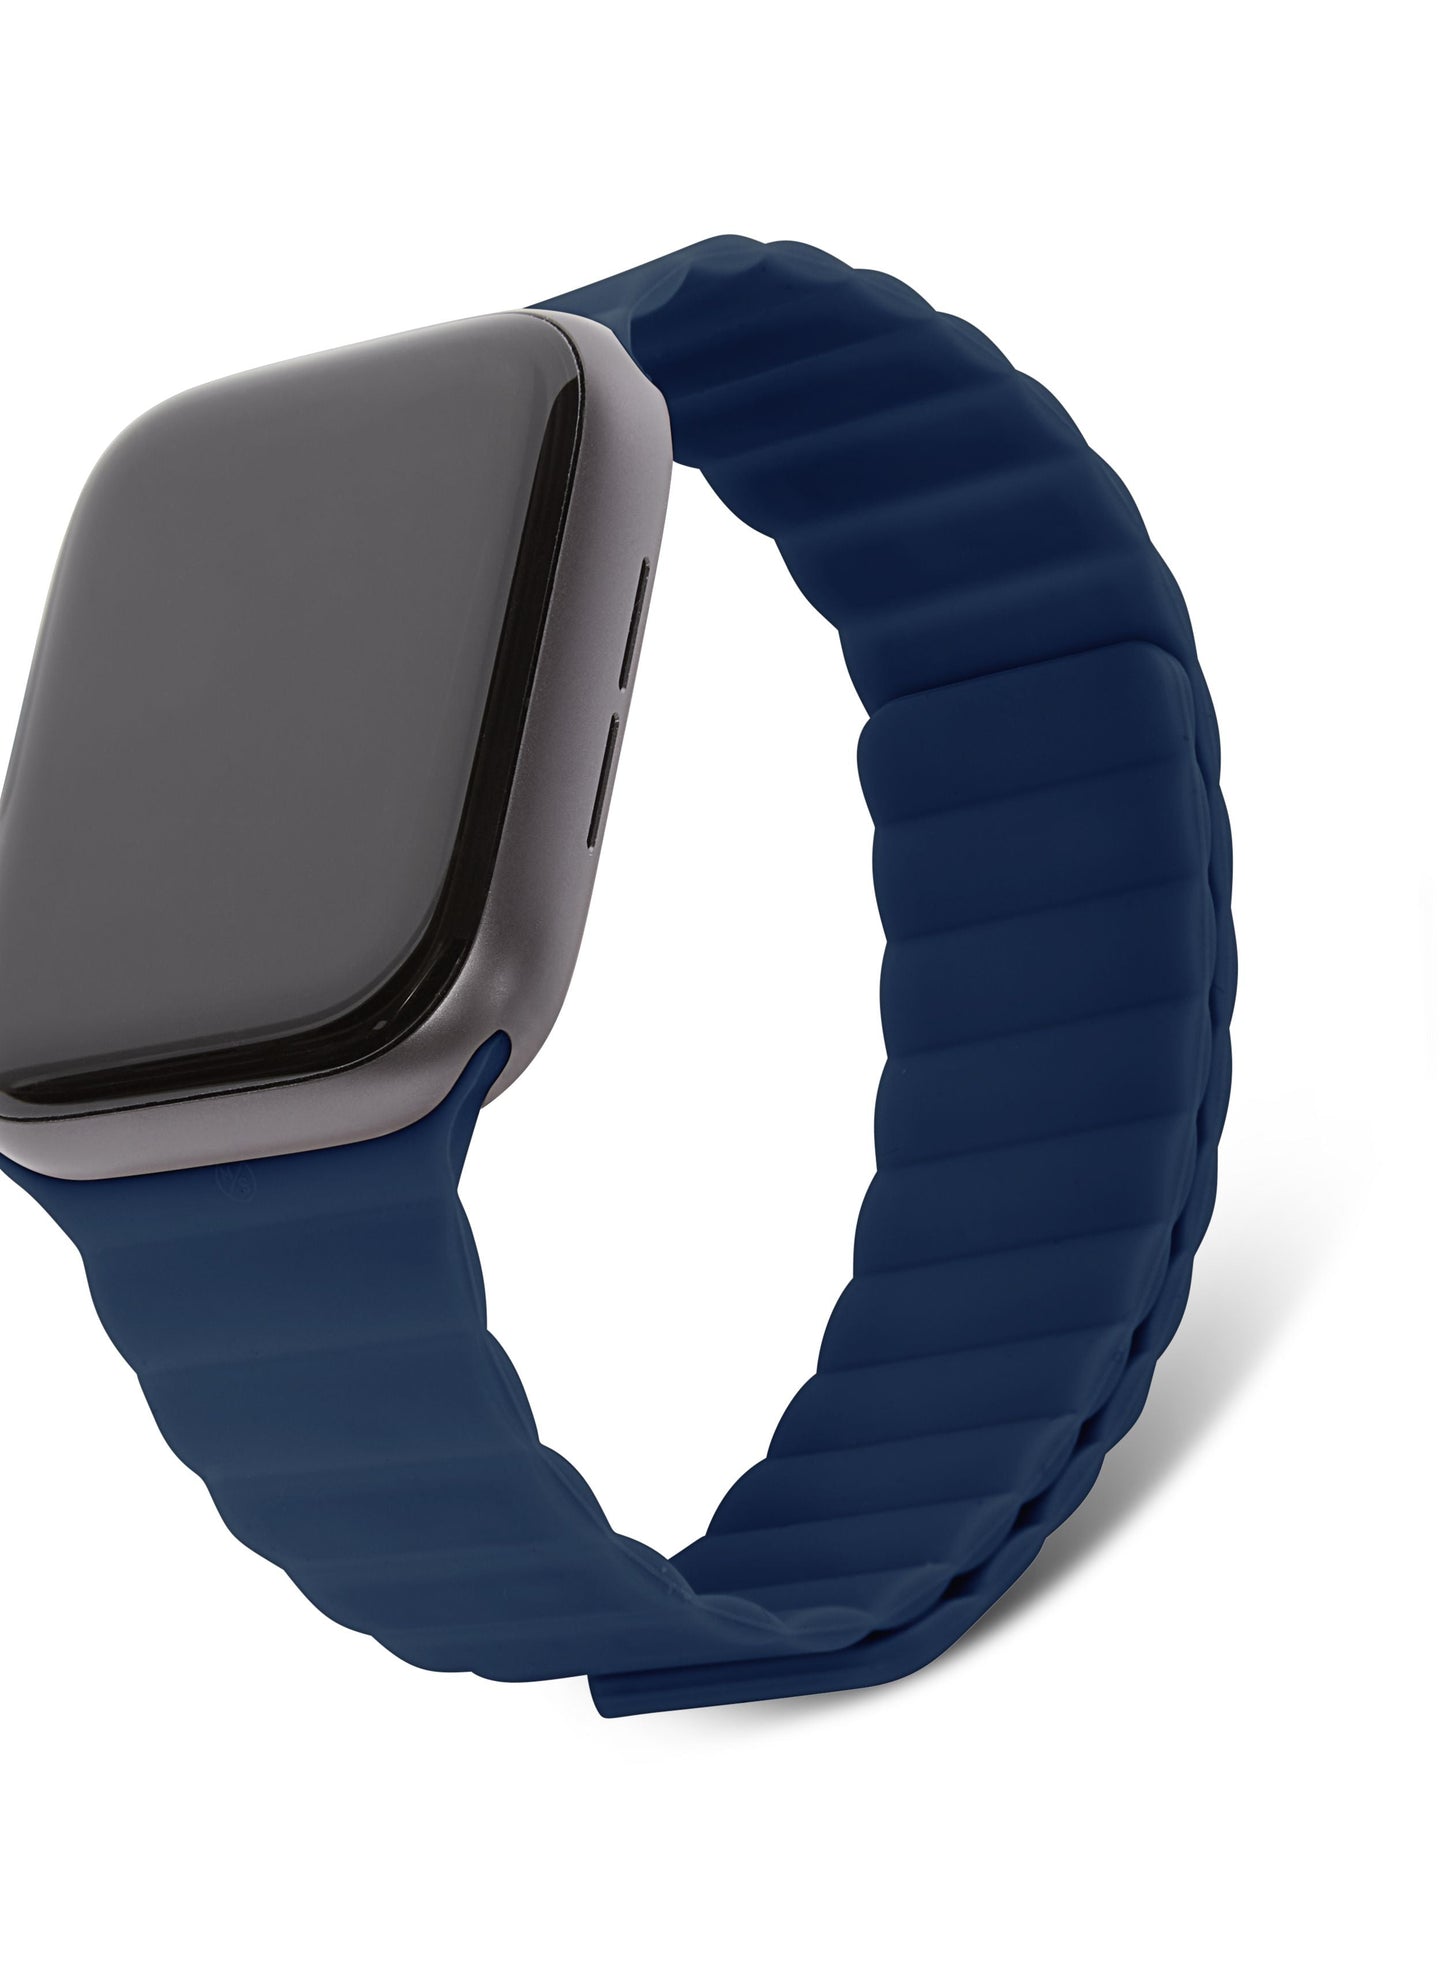 Mi Watch Lite : l'ersatz d'Apple Watch disponible en France à 50